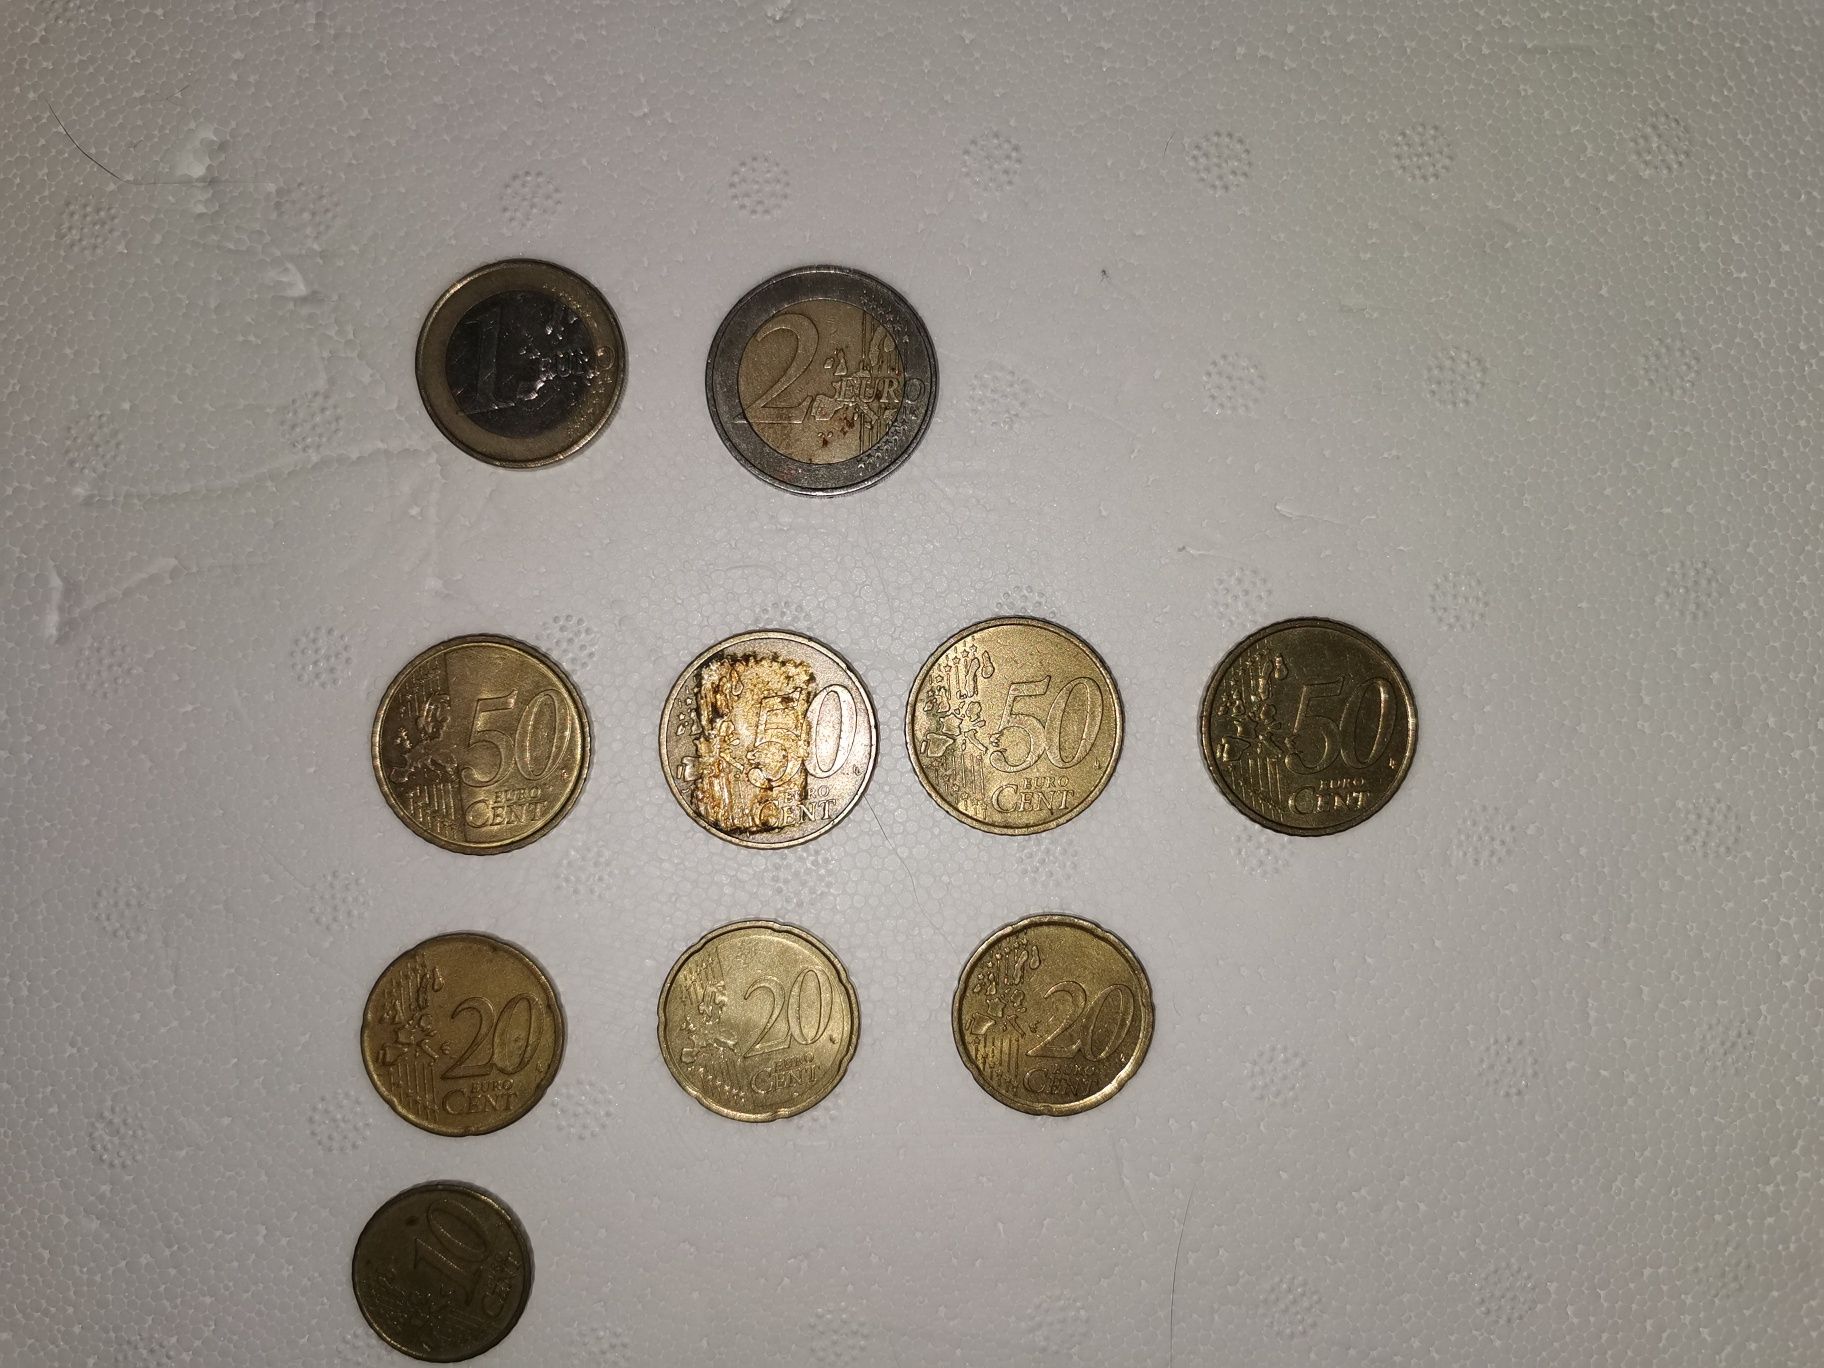 Vand monede rare  1 eur/2 eur/50 cent/20 cent/10 cent.